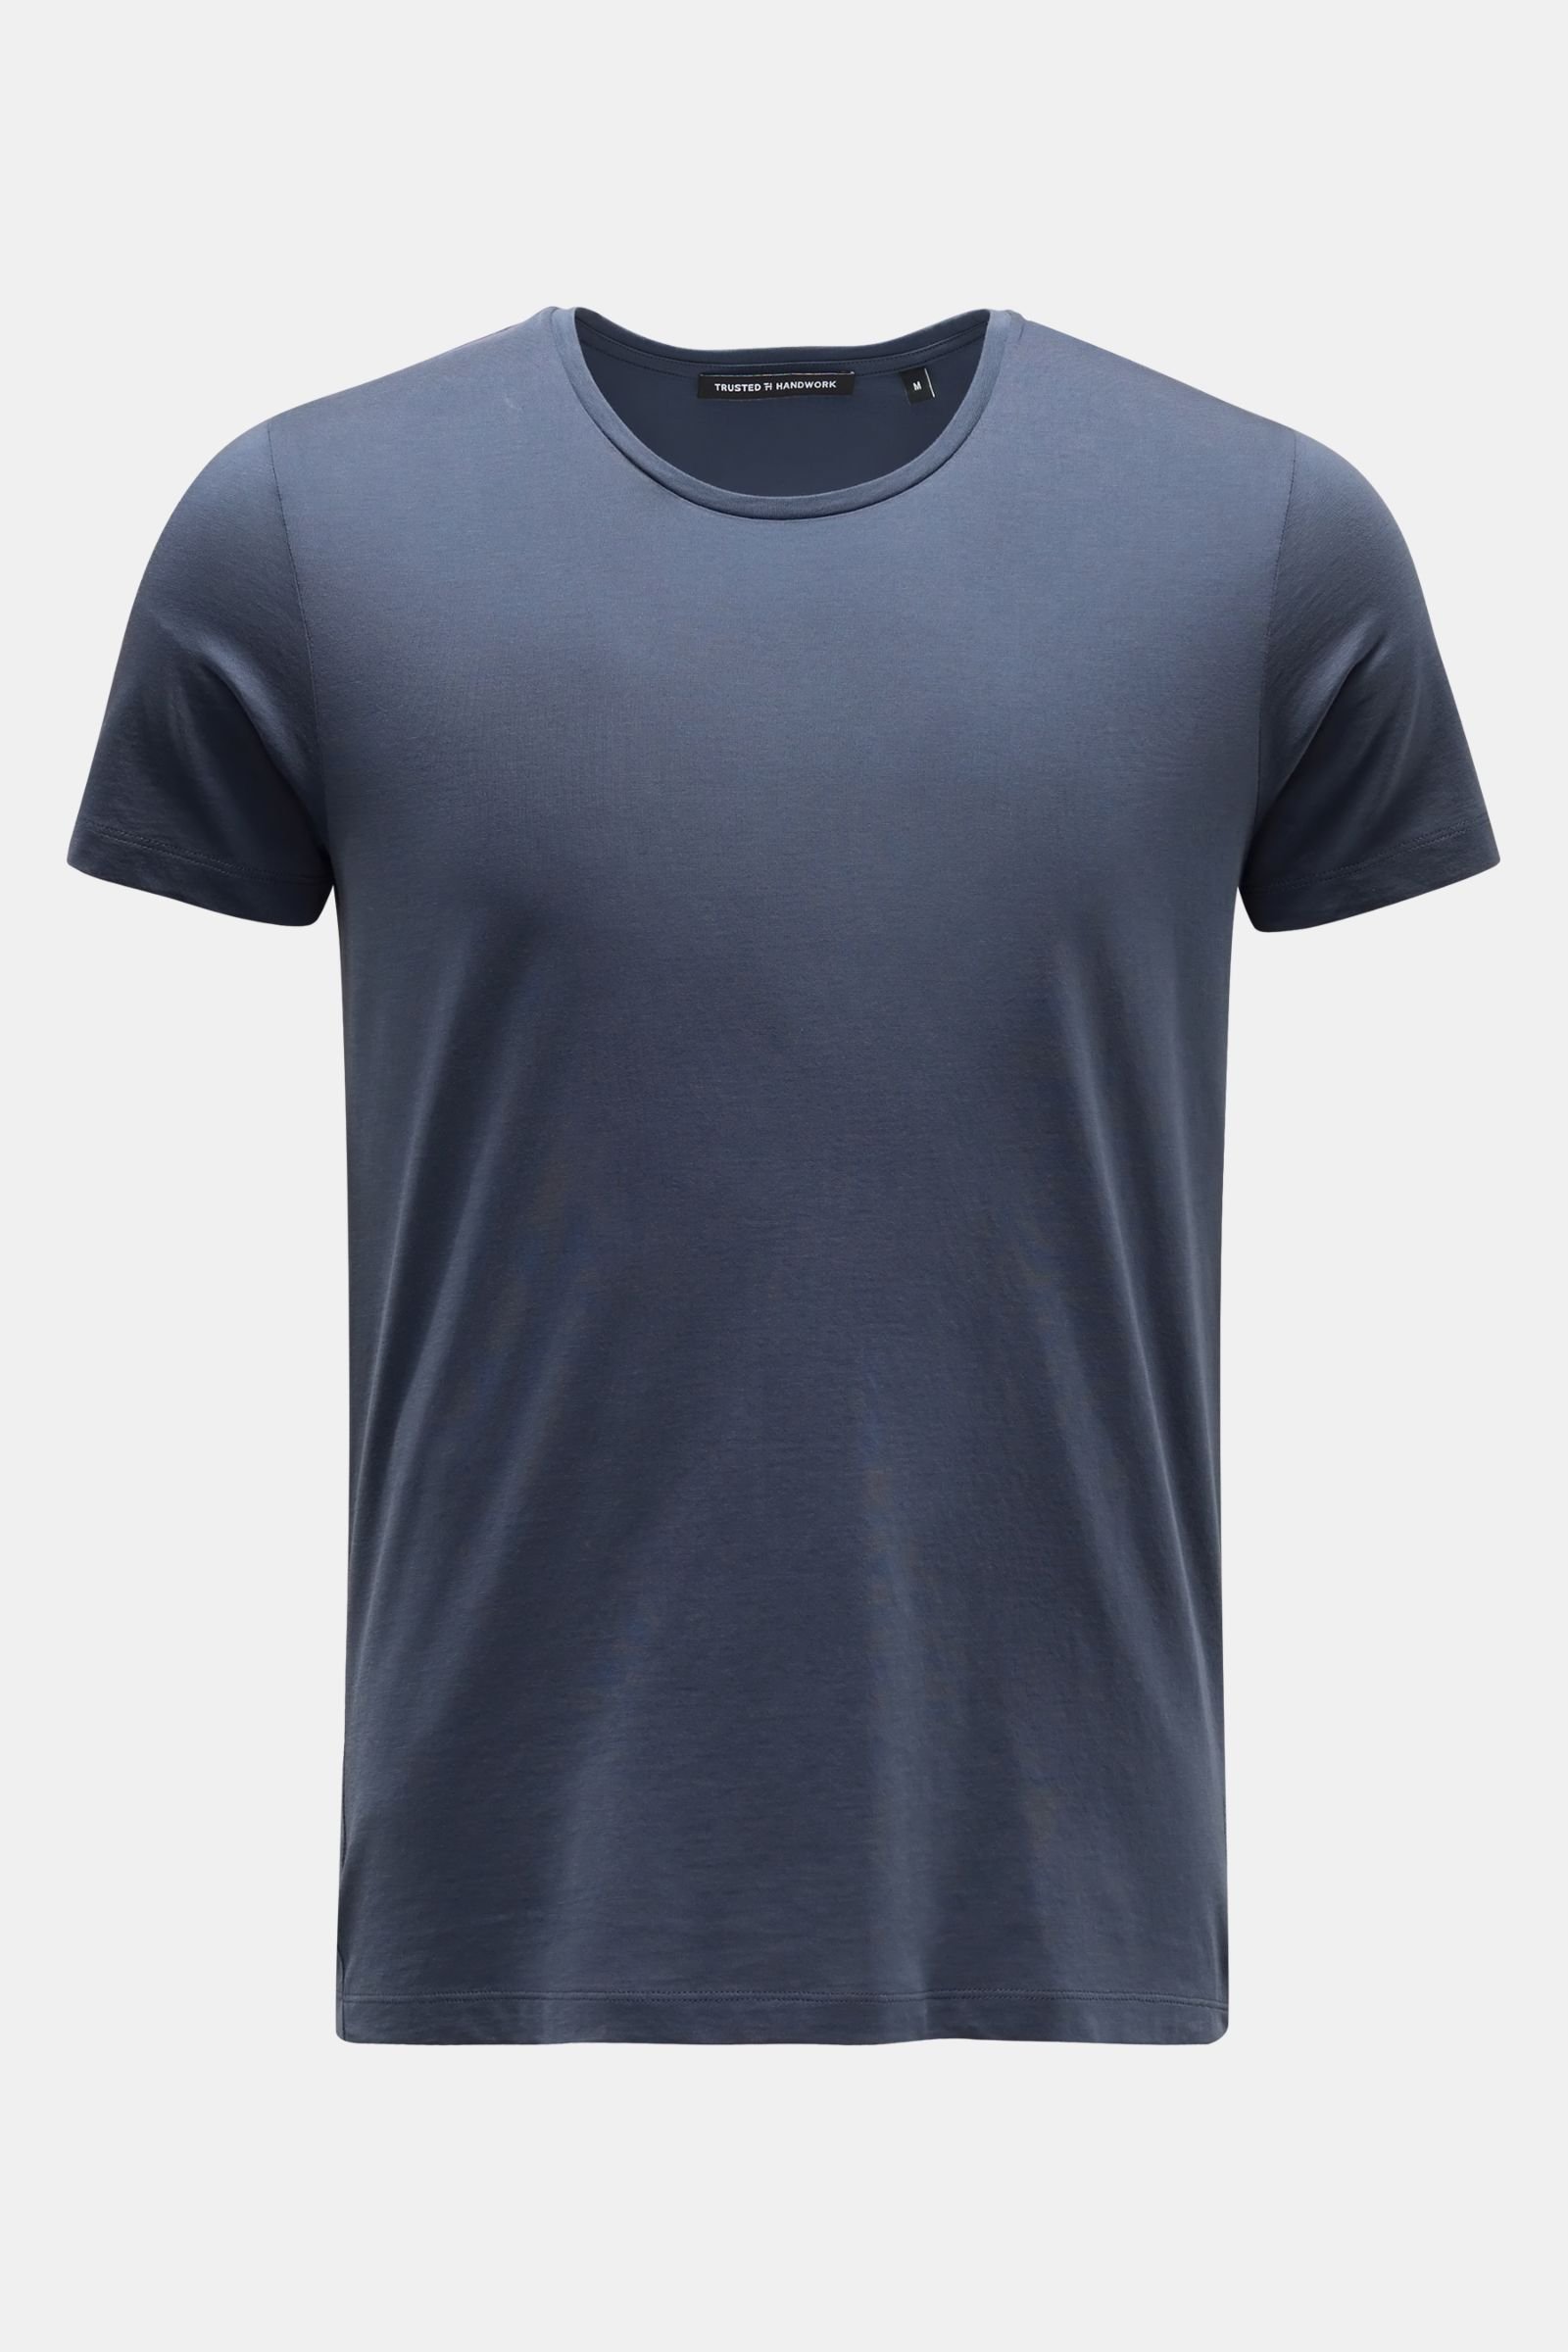 Rundhals-T-Shirt 'Washington' graublau